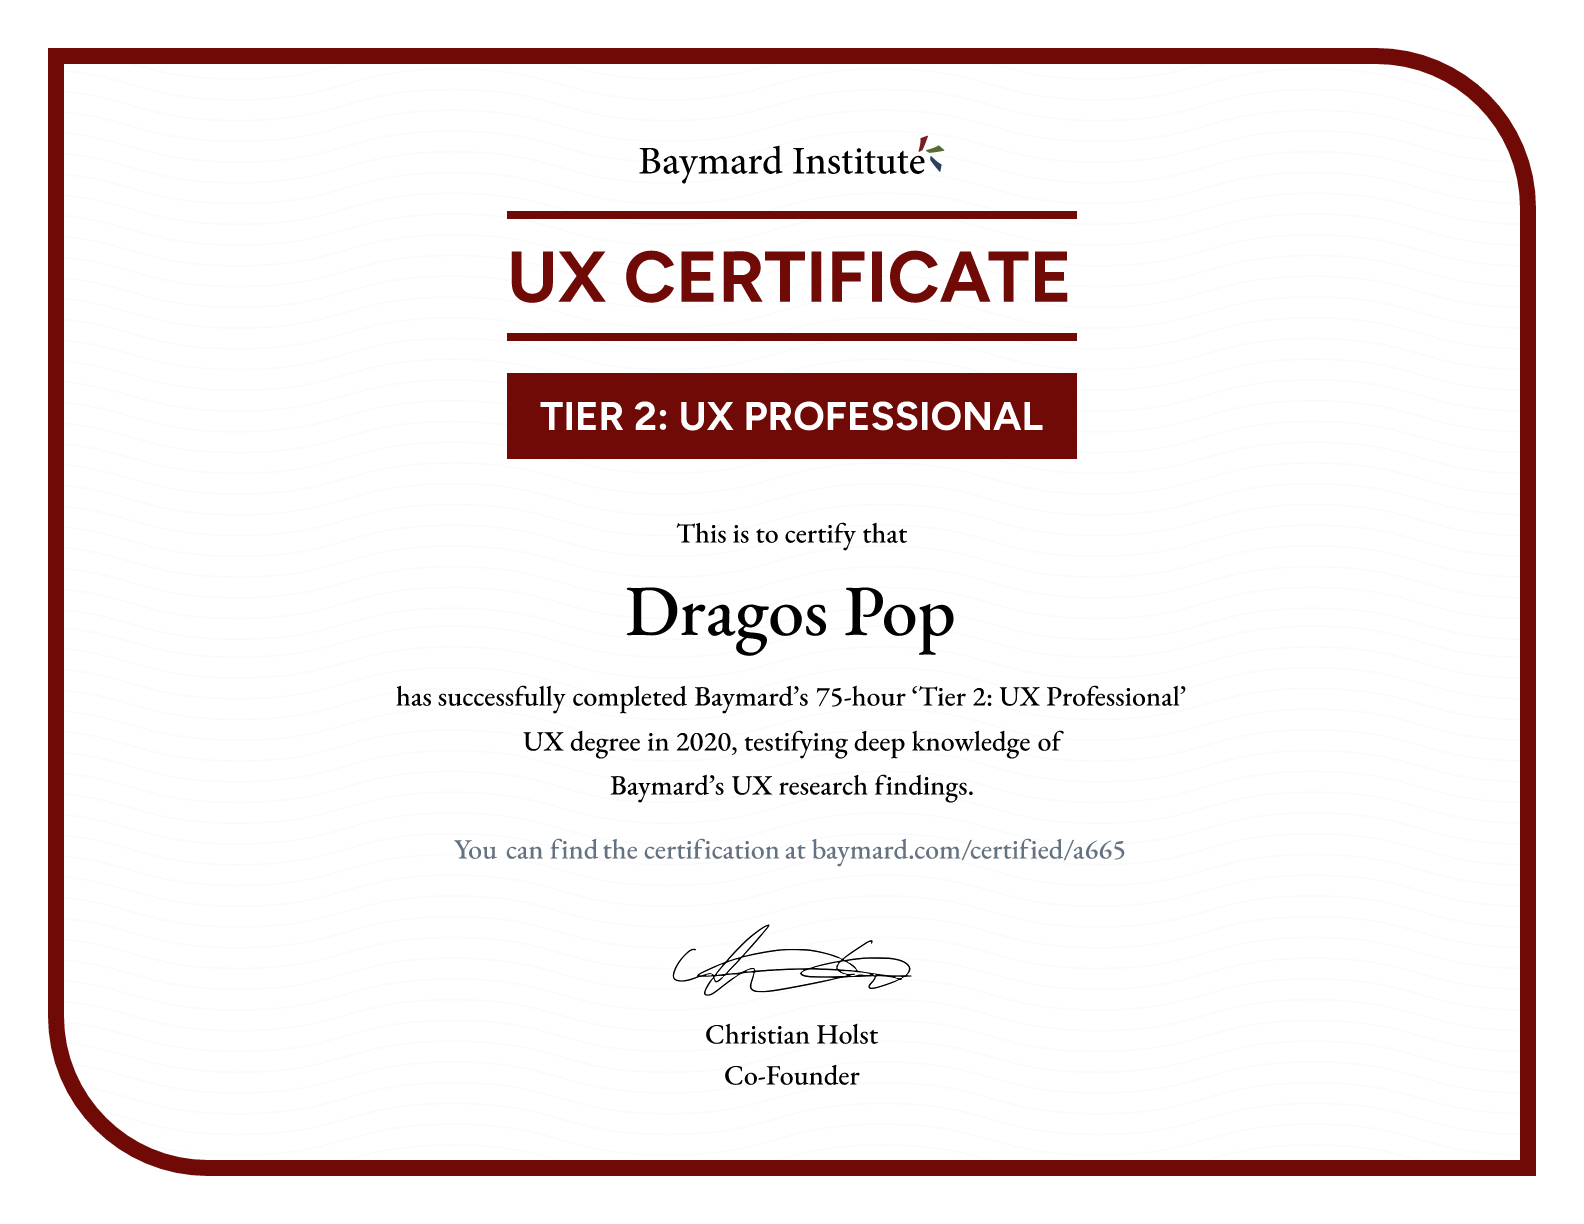 Dragos Pop’s certificate